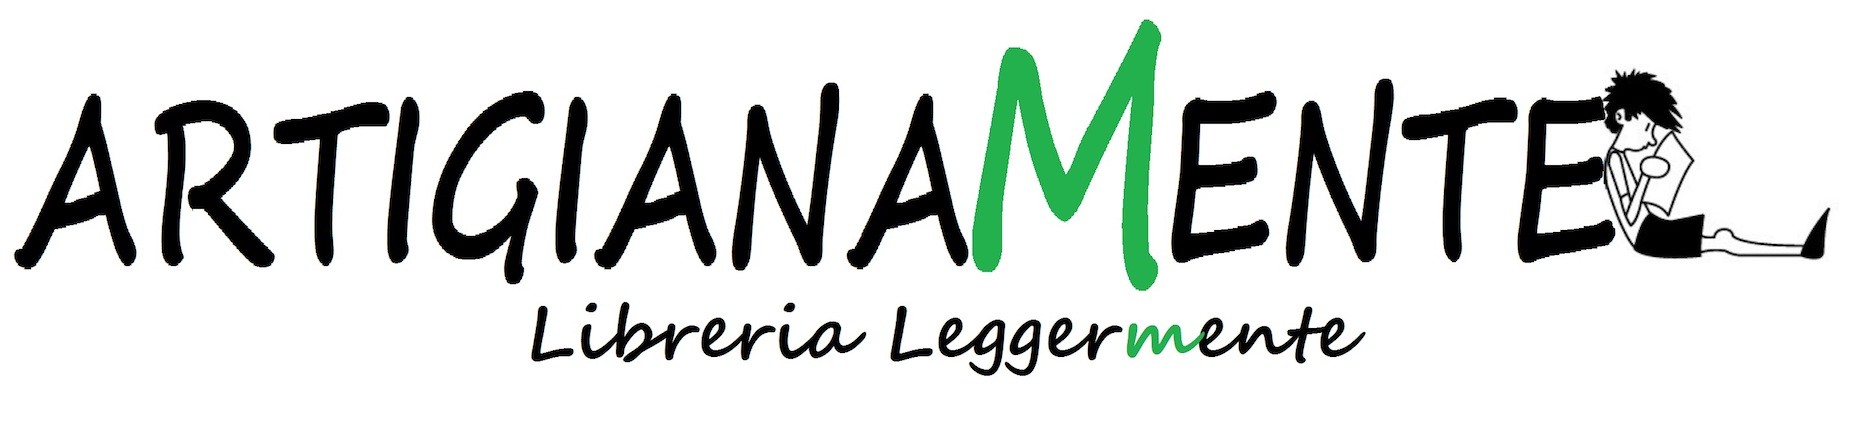 ArtigianaMente-shop / Libreria Leggermente logo